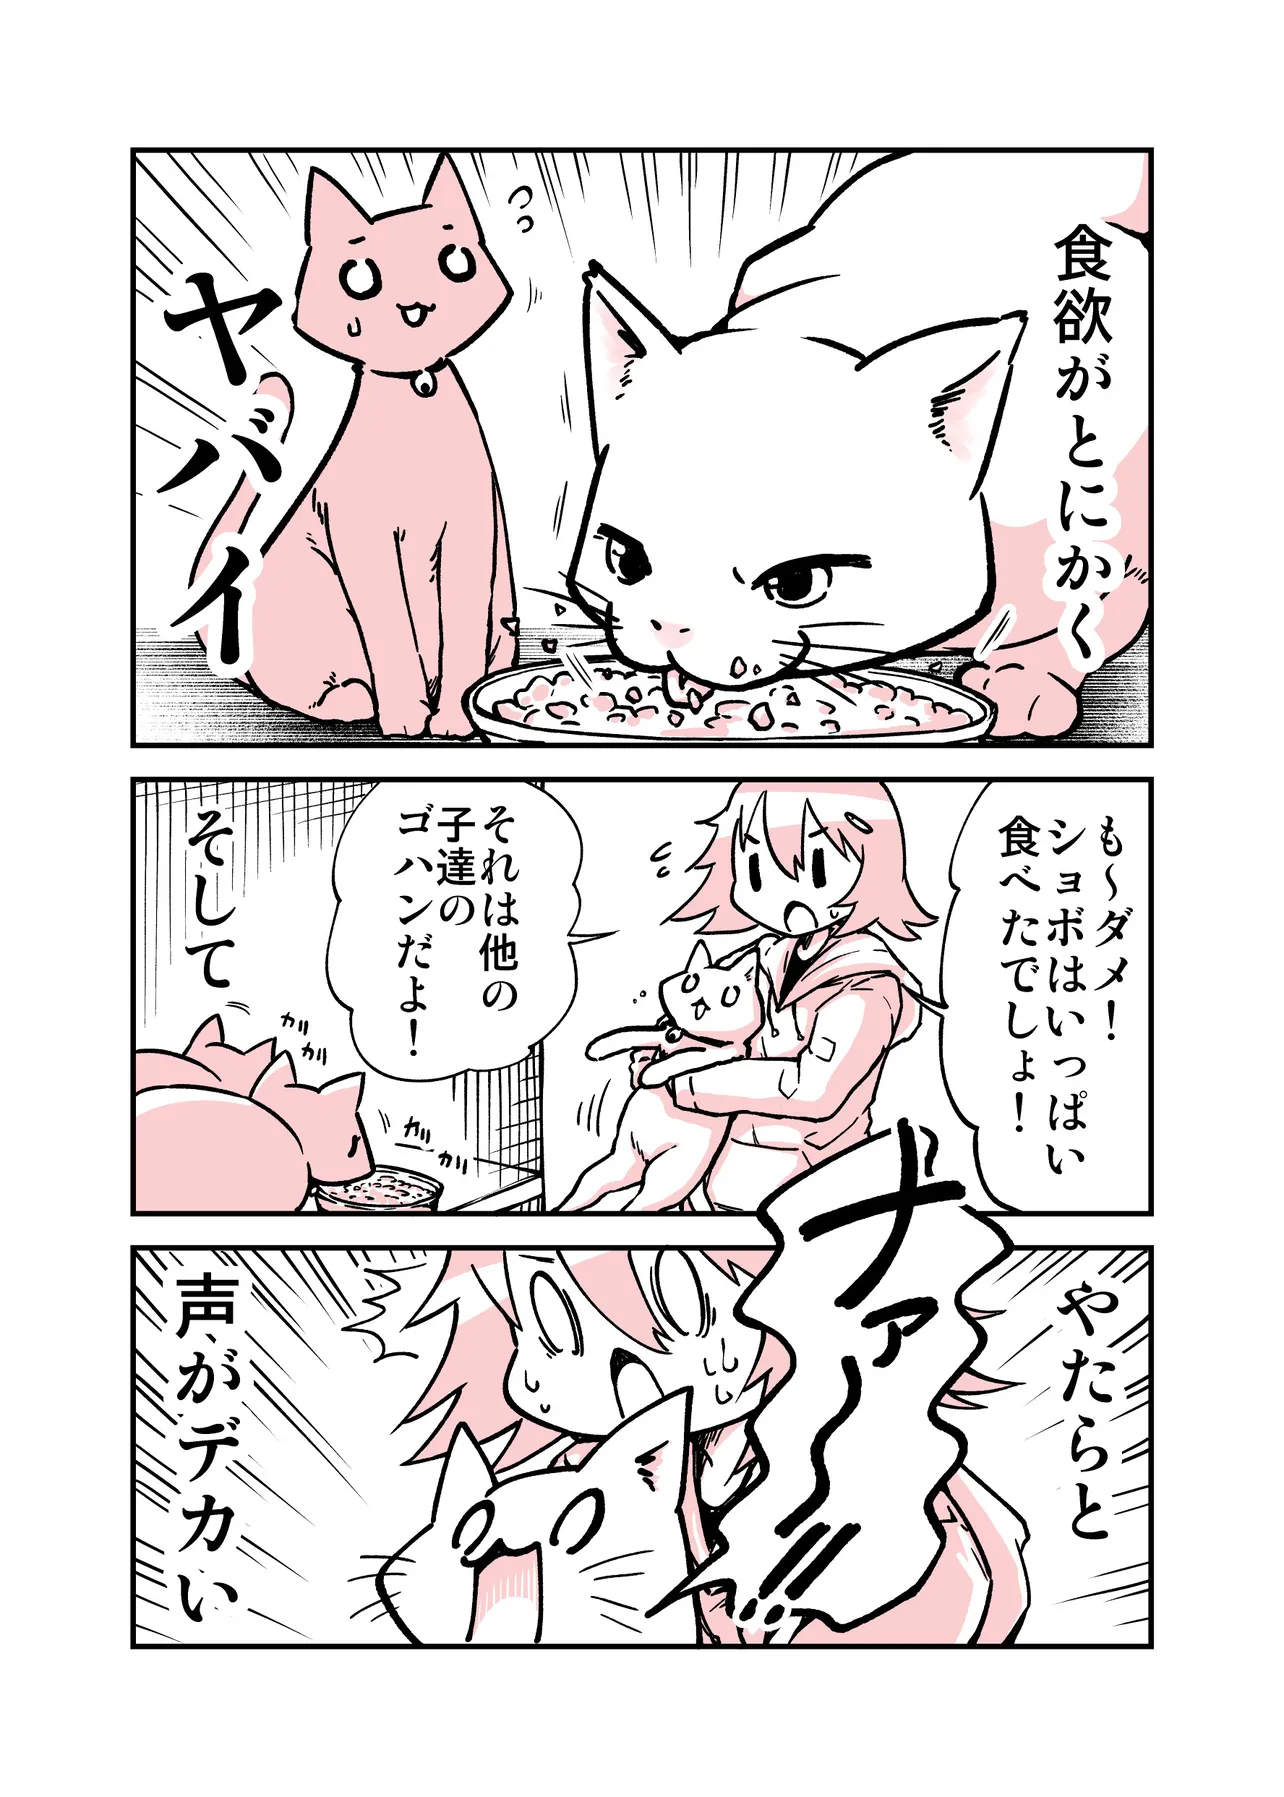 保護猫の子猫達の日記漫画(2／4)